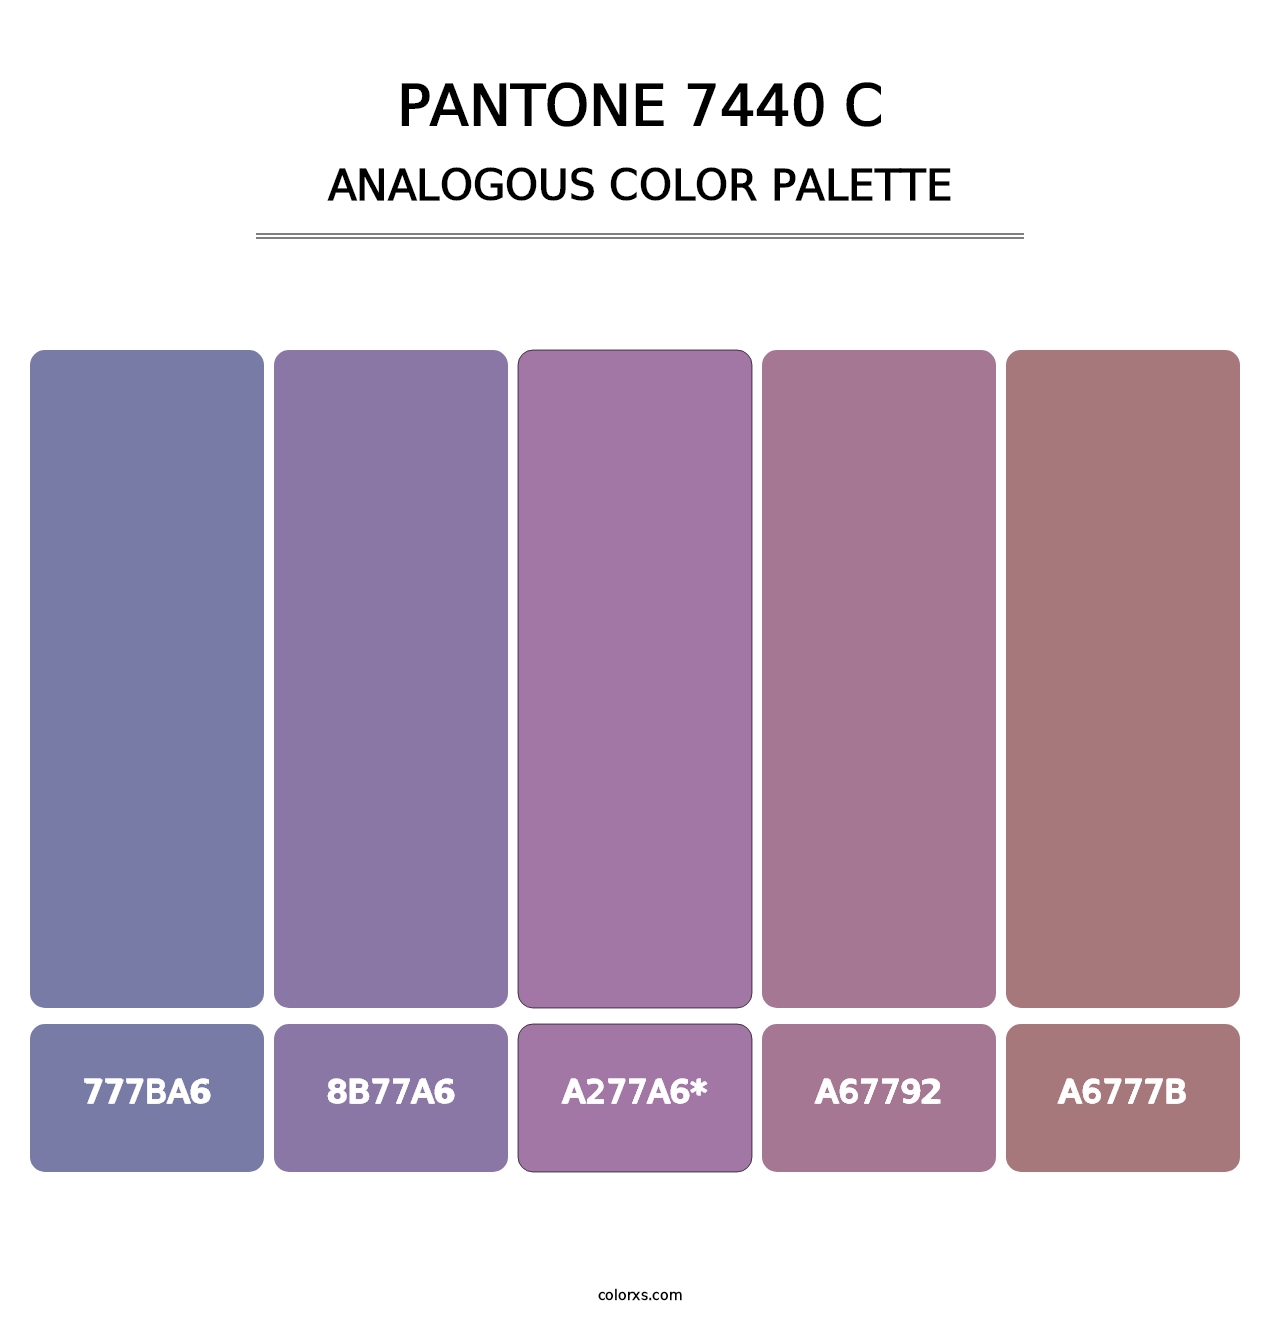 PANTONE 7440 C - Analogous Color Palette